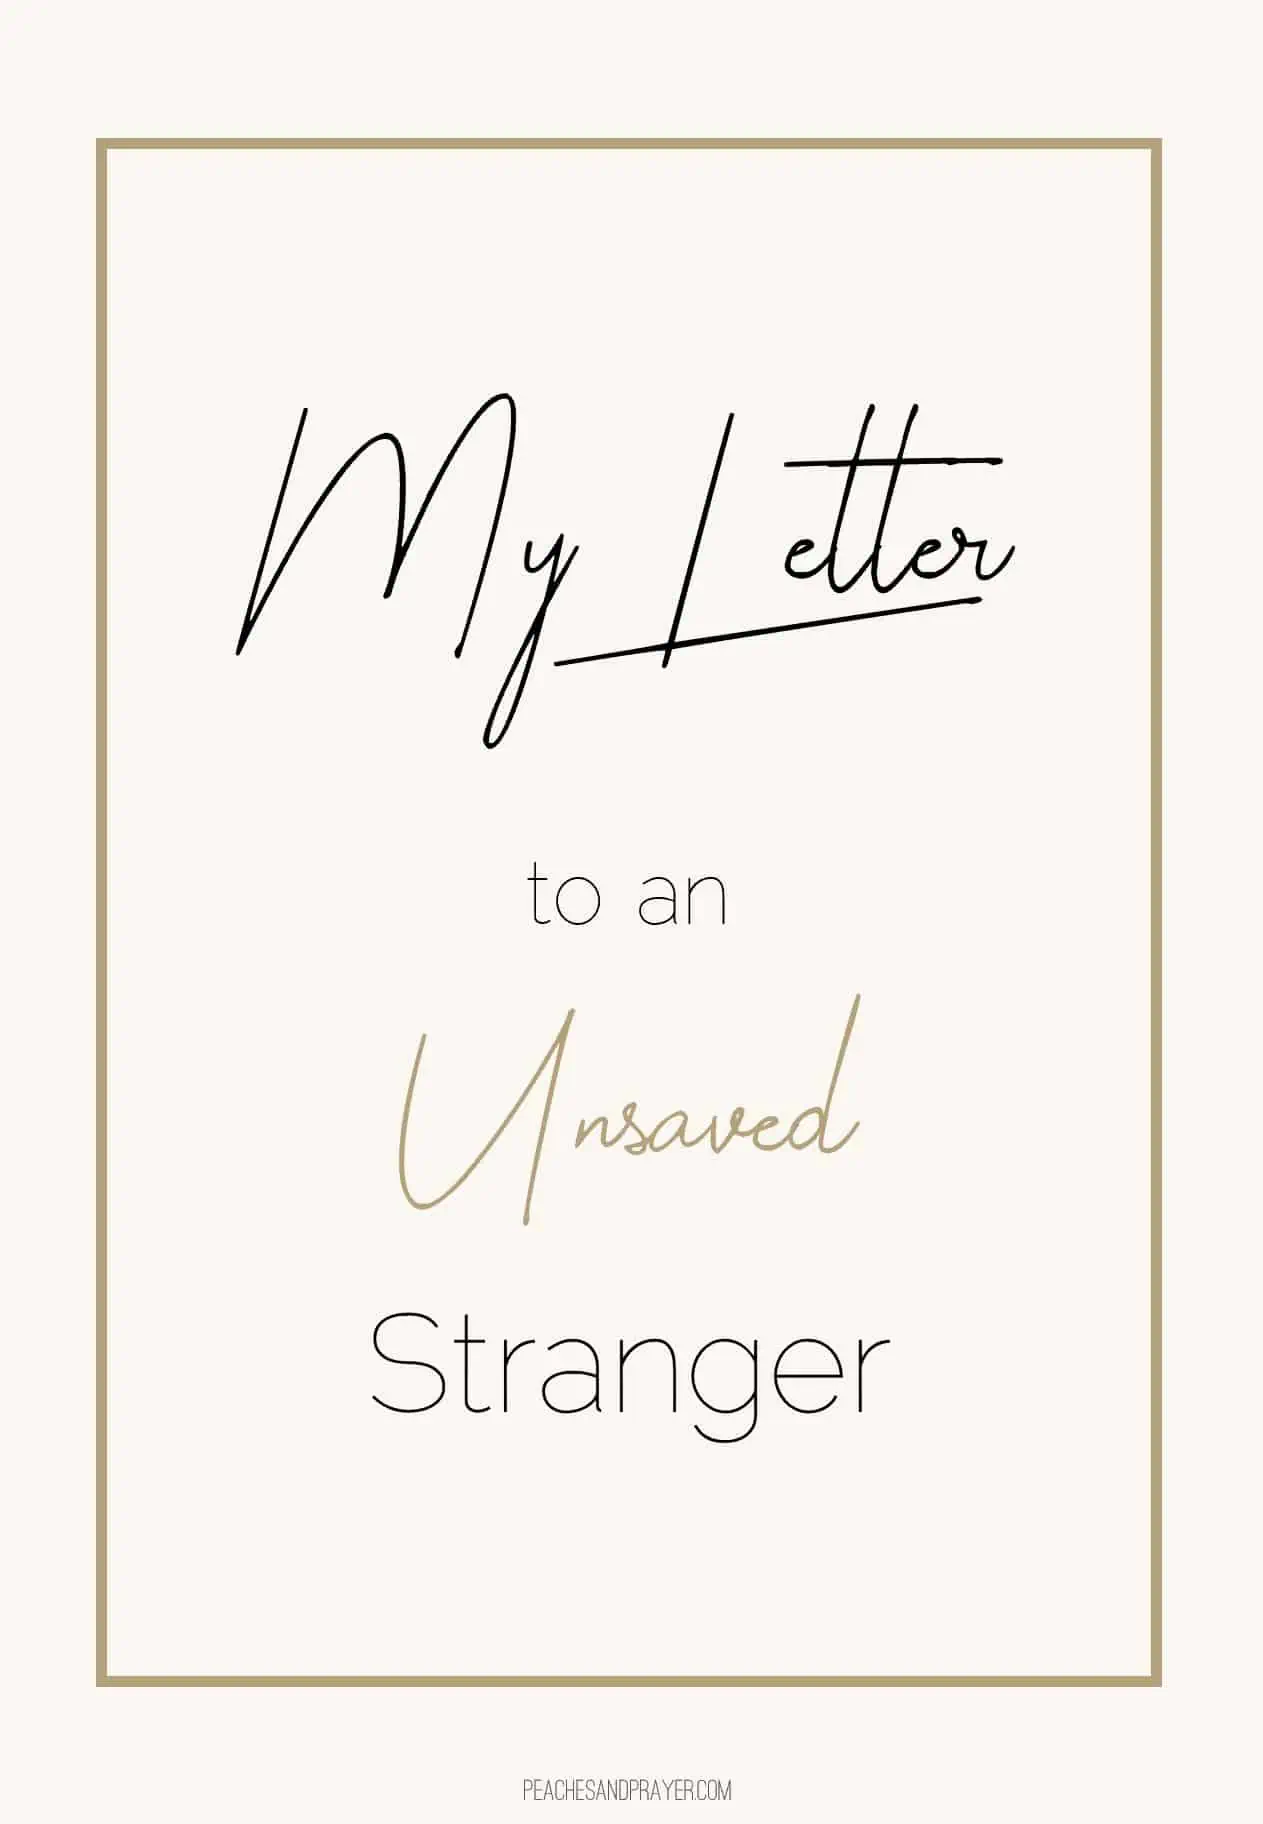 Dear Unsaved Stranger